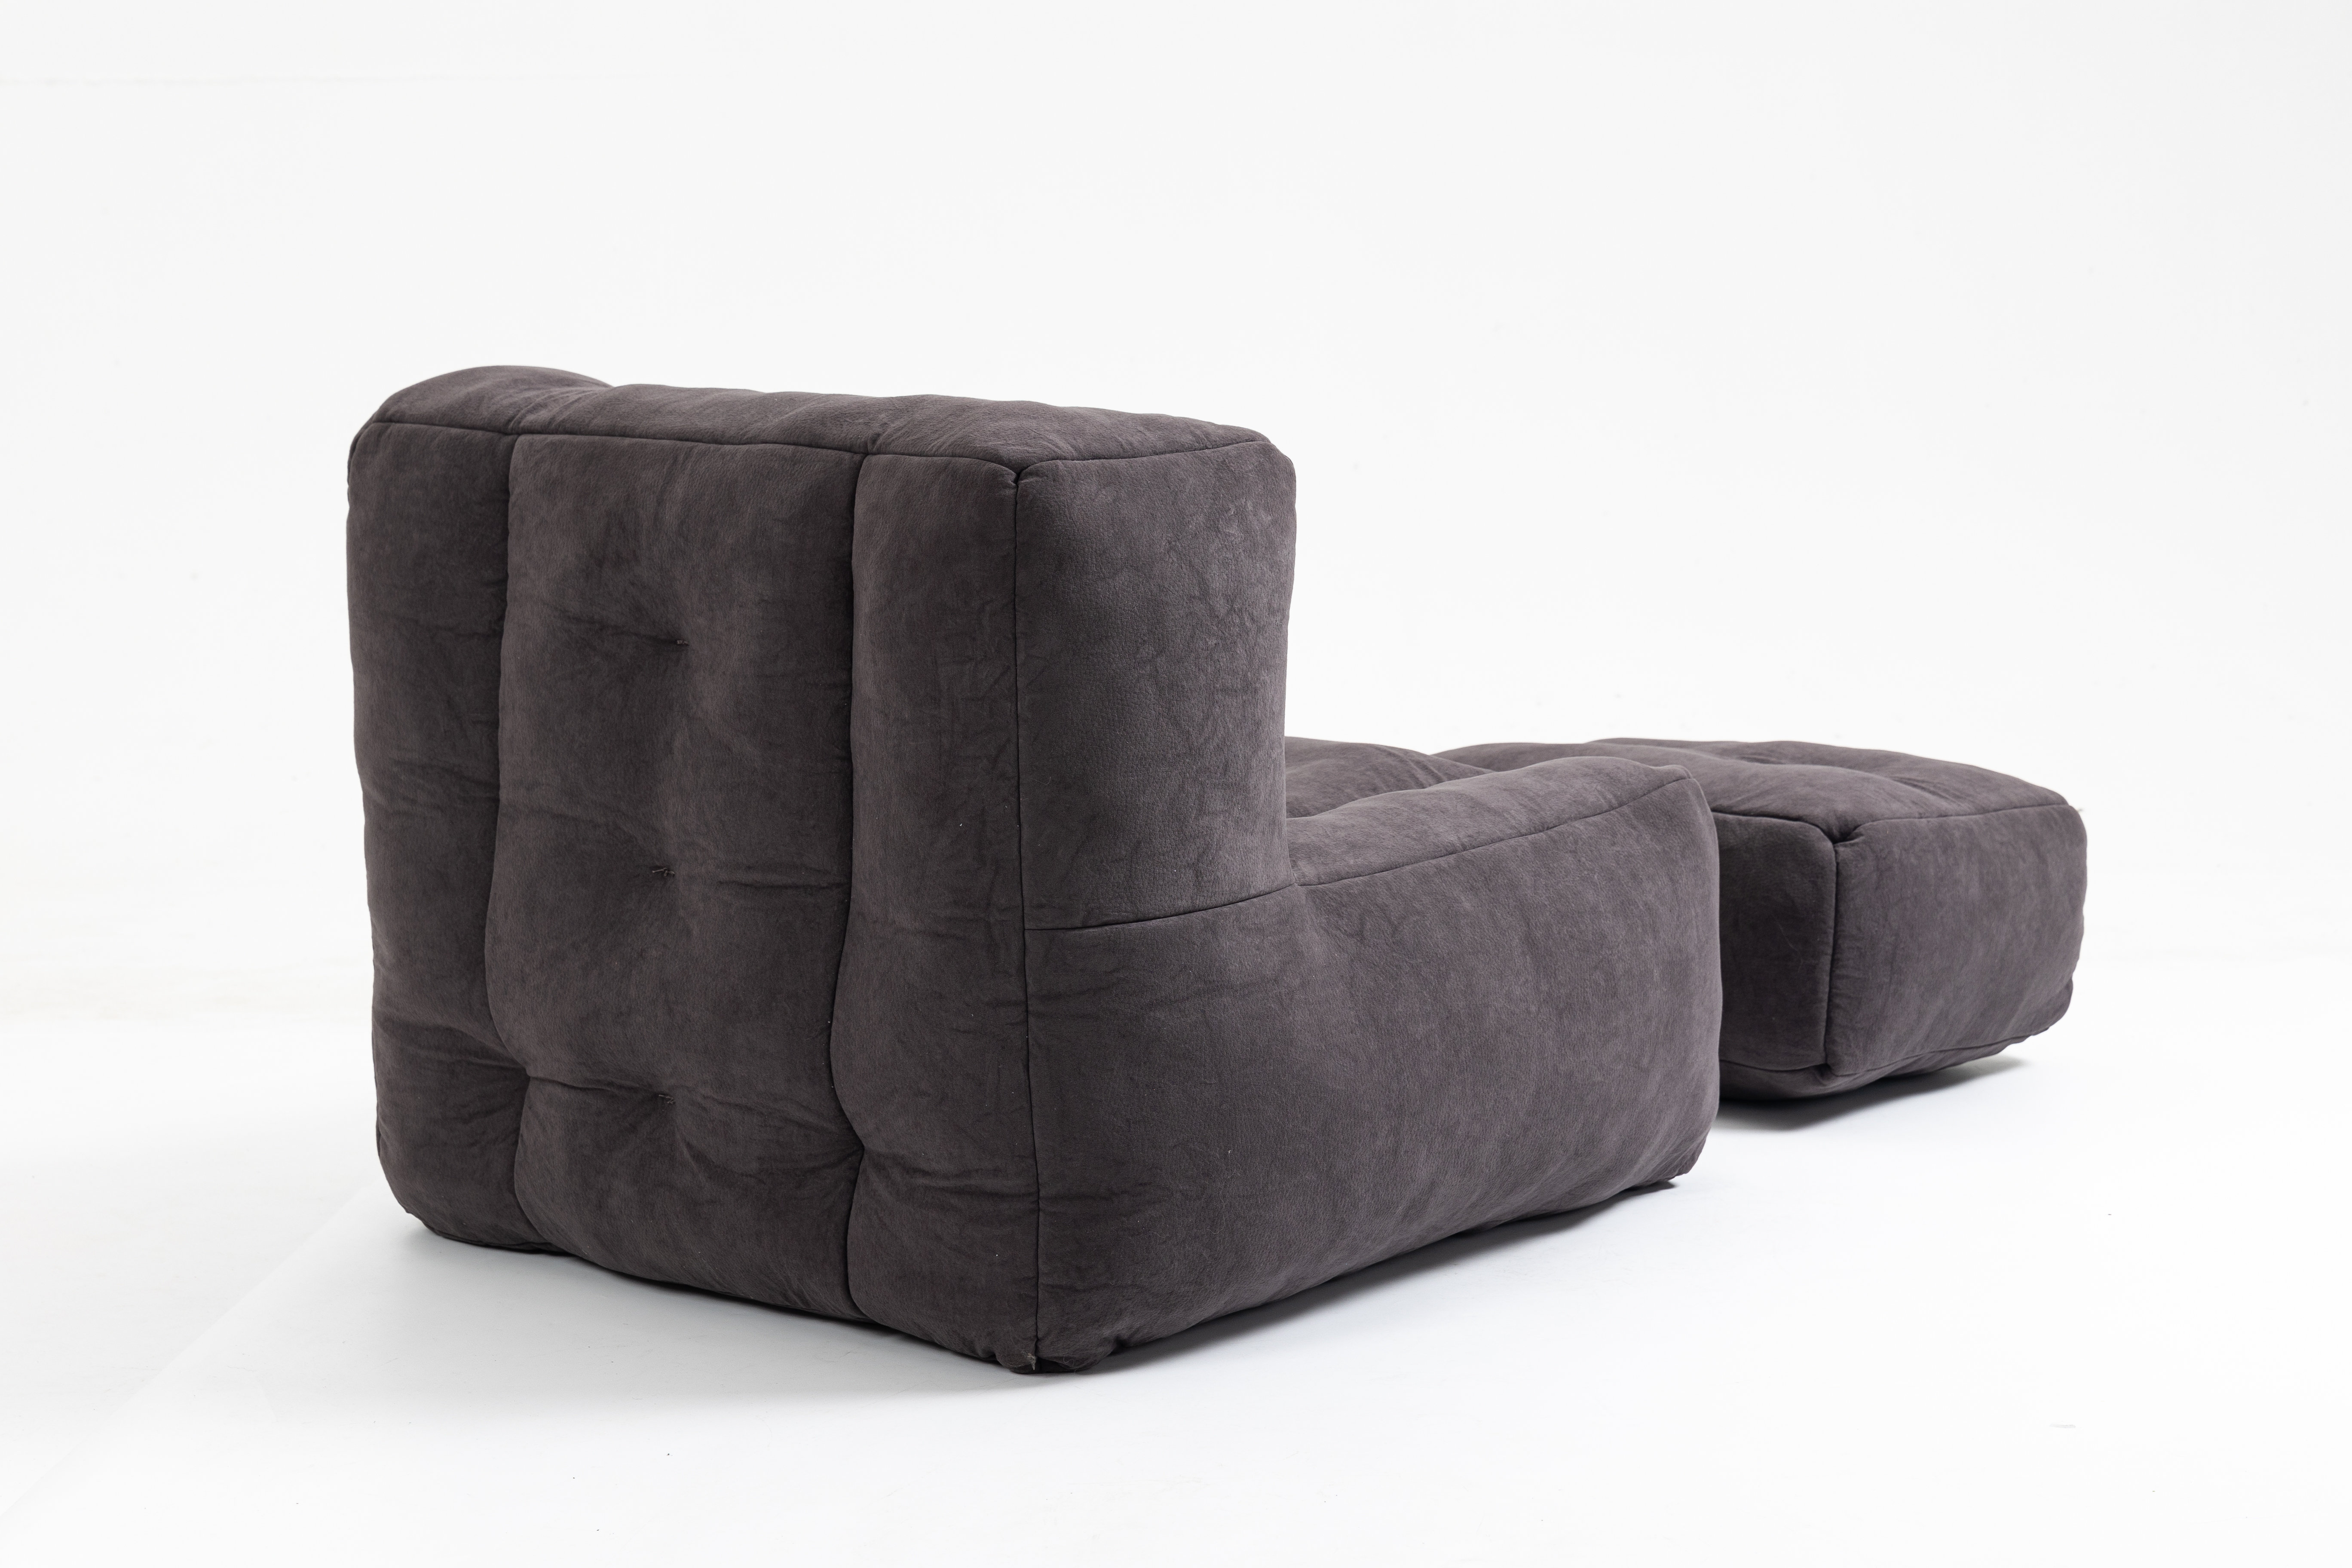 Latitude Run MicroSuede Bean Bag Sofa Upholstery: Black